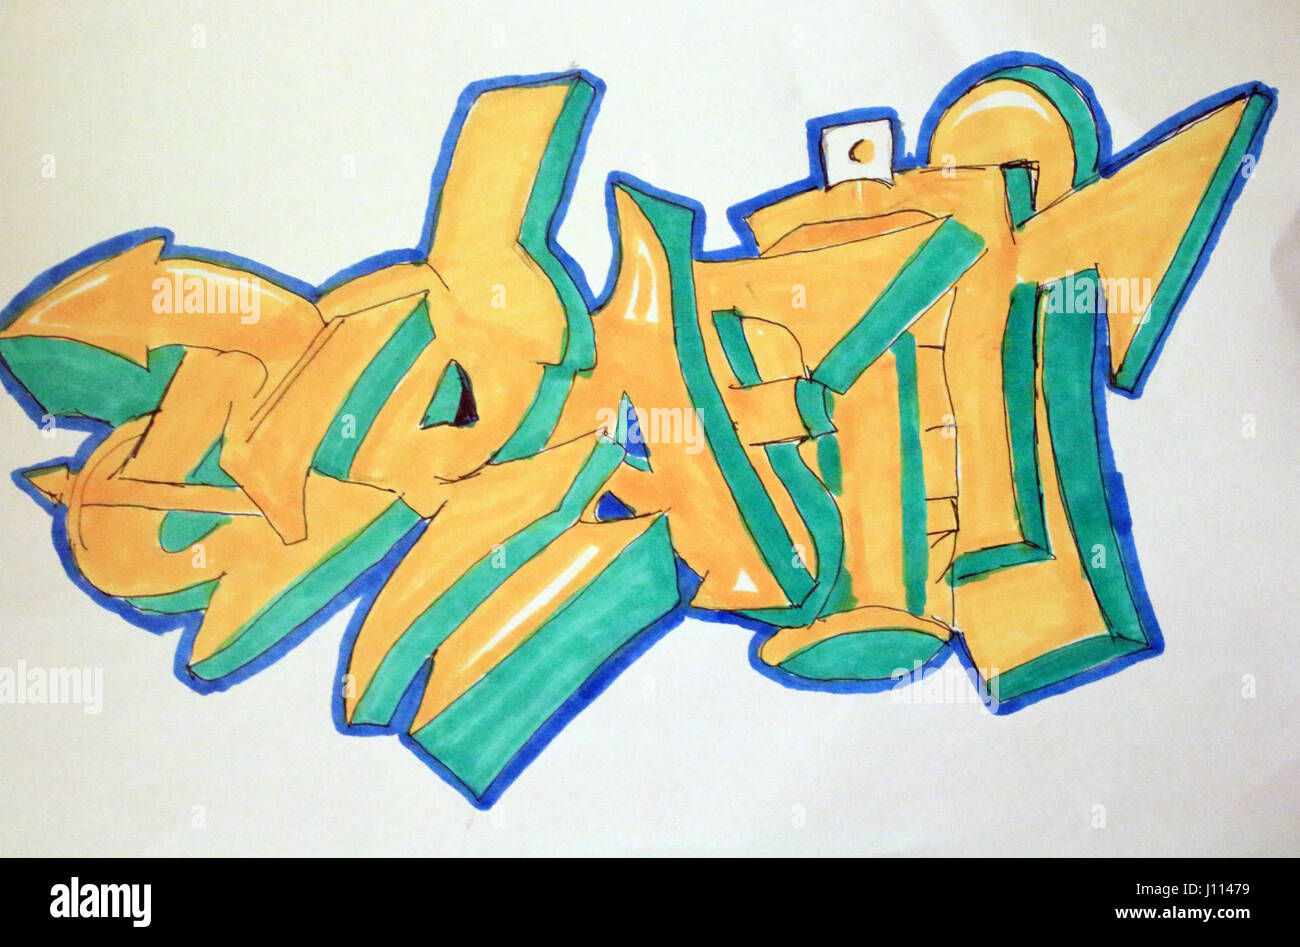 graffiti sketch in colour Stock Photo